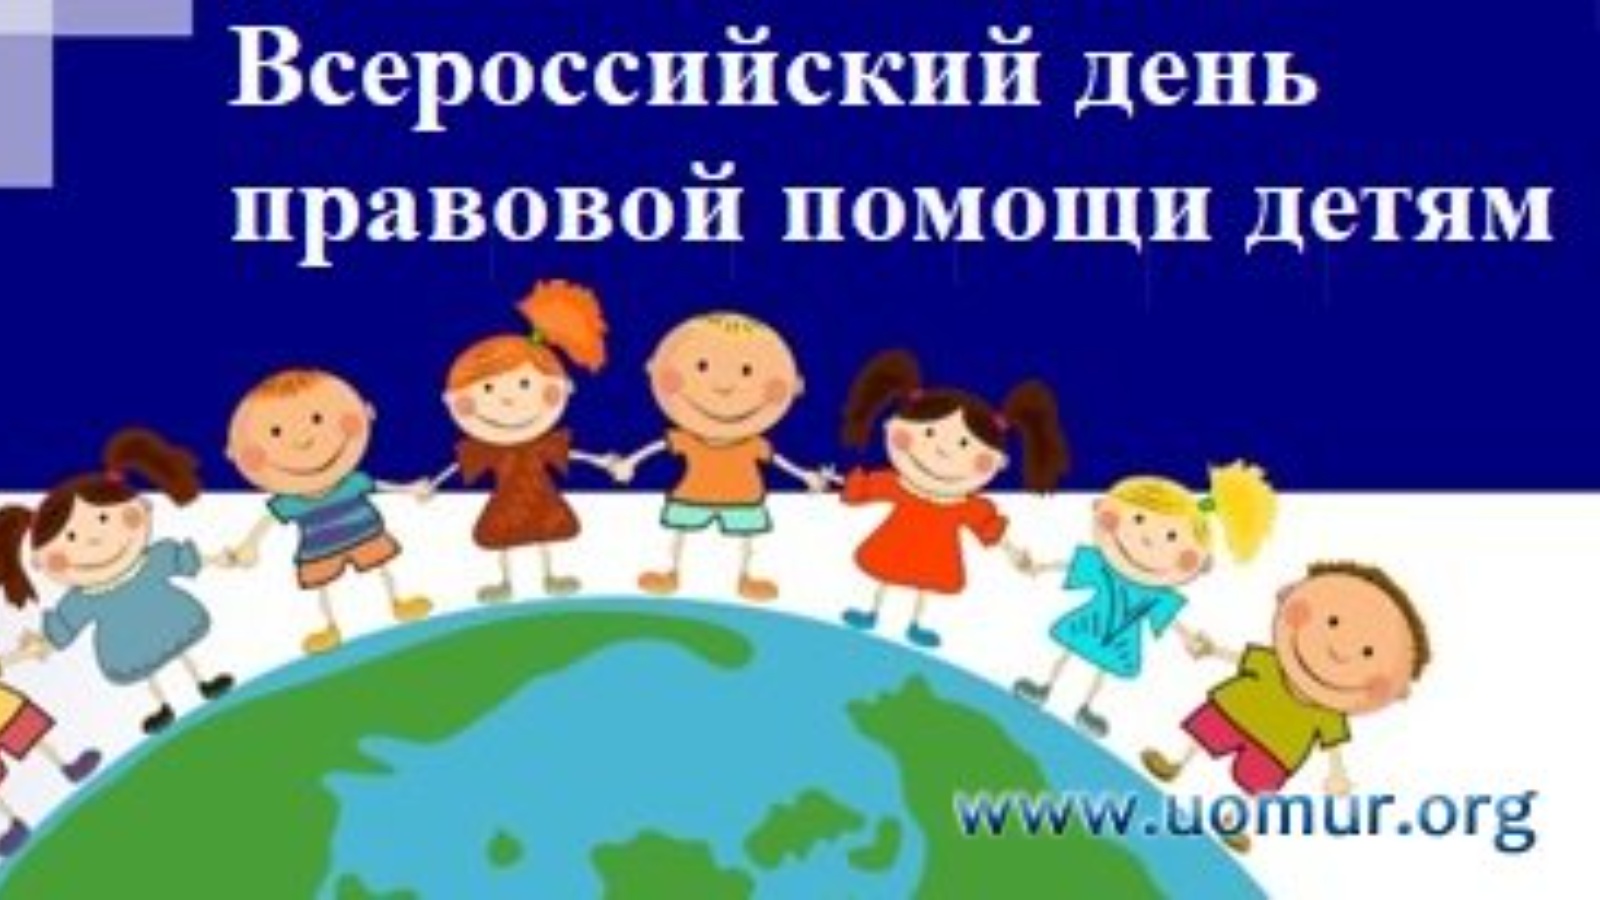 «Всероссийский день правовой помощи детям». В старшей группе цель: